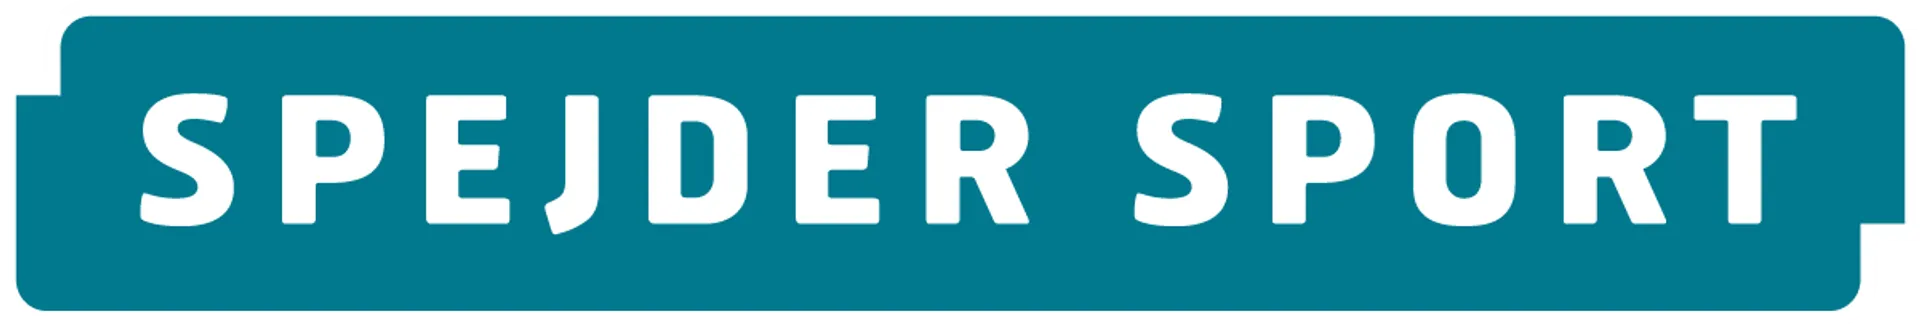 SPEJDER SPORT logo